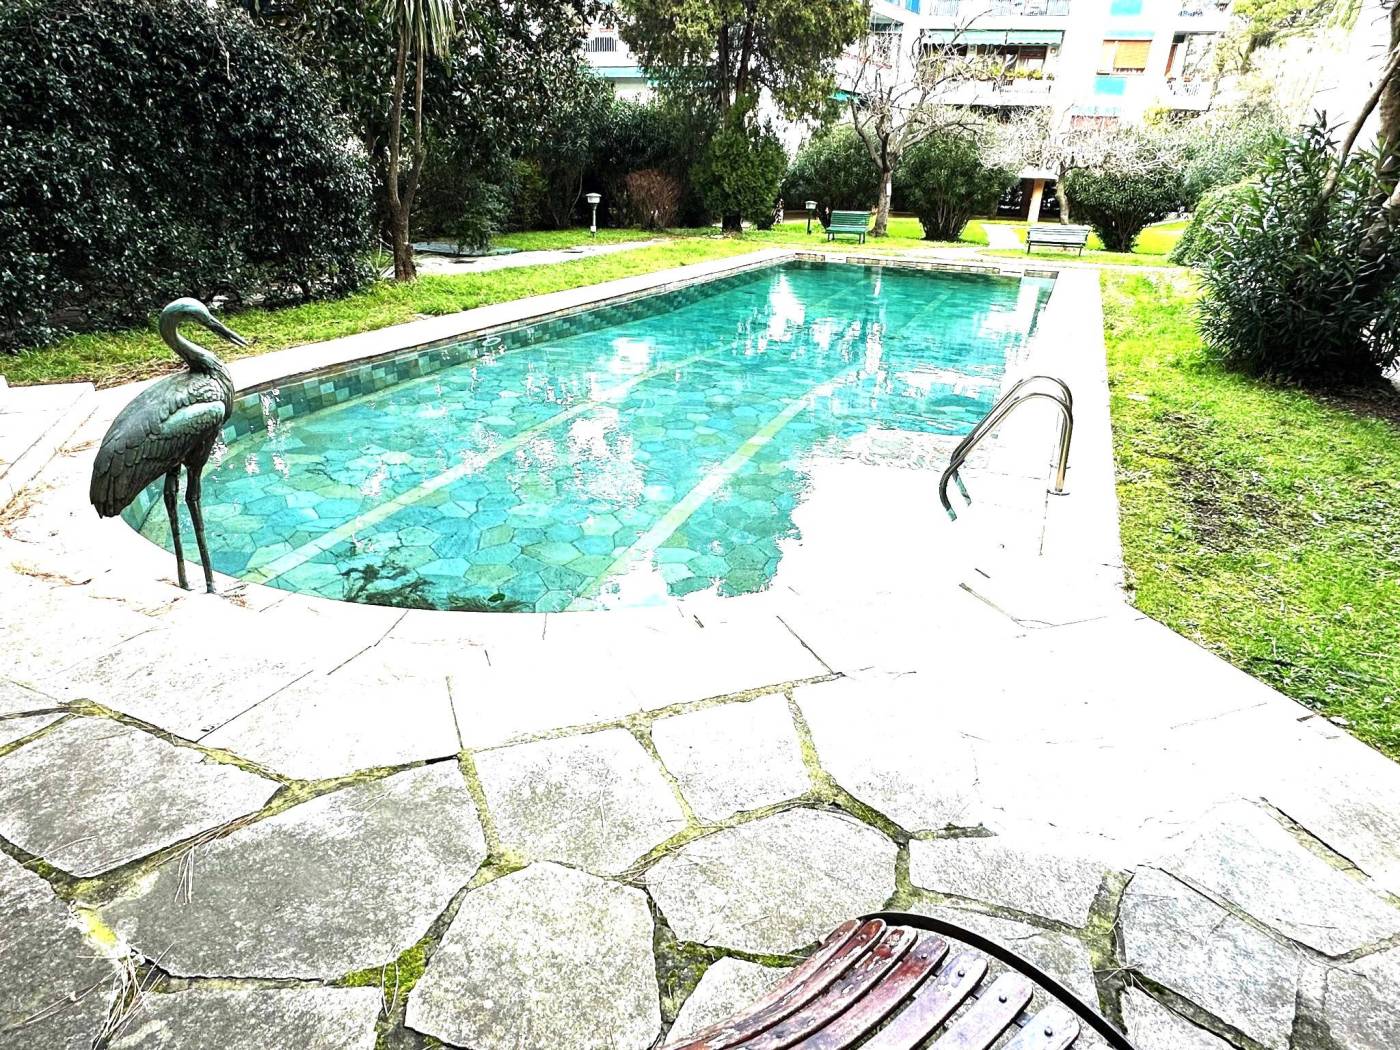 ALBARO-VIA CIRENAICA: In esclusivo contesto privato immerso nel verde con splendida piscina condominiale, numerosi posti auto e portineria, 